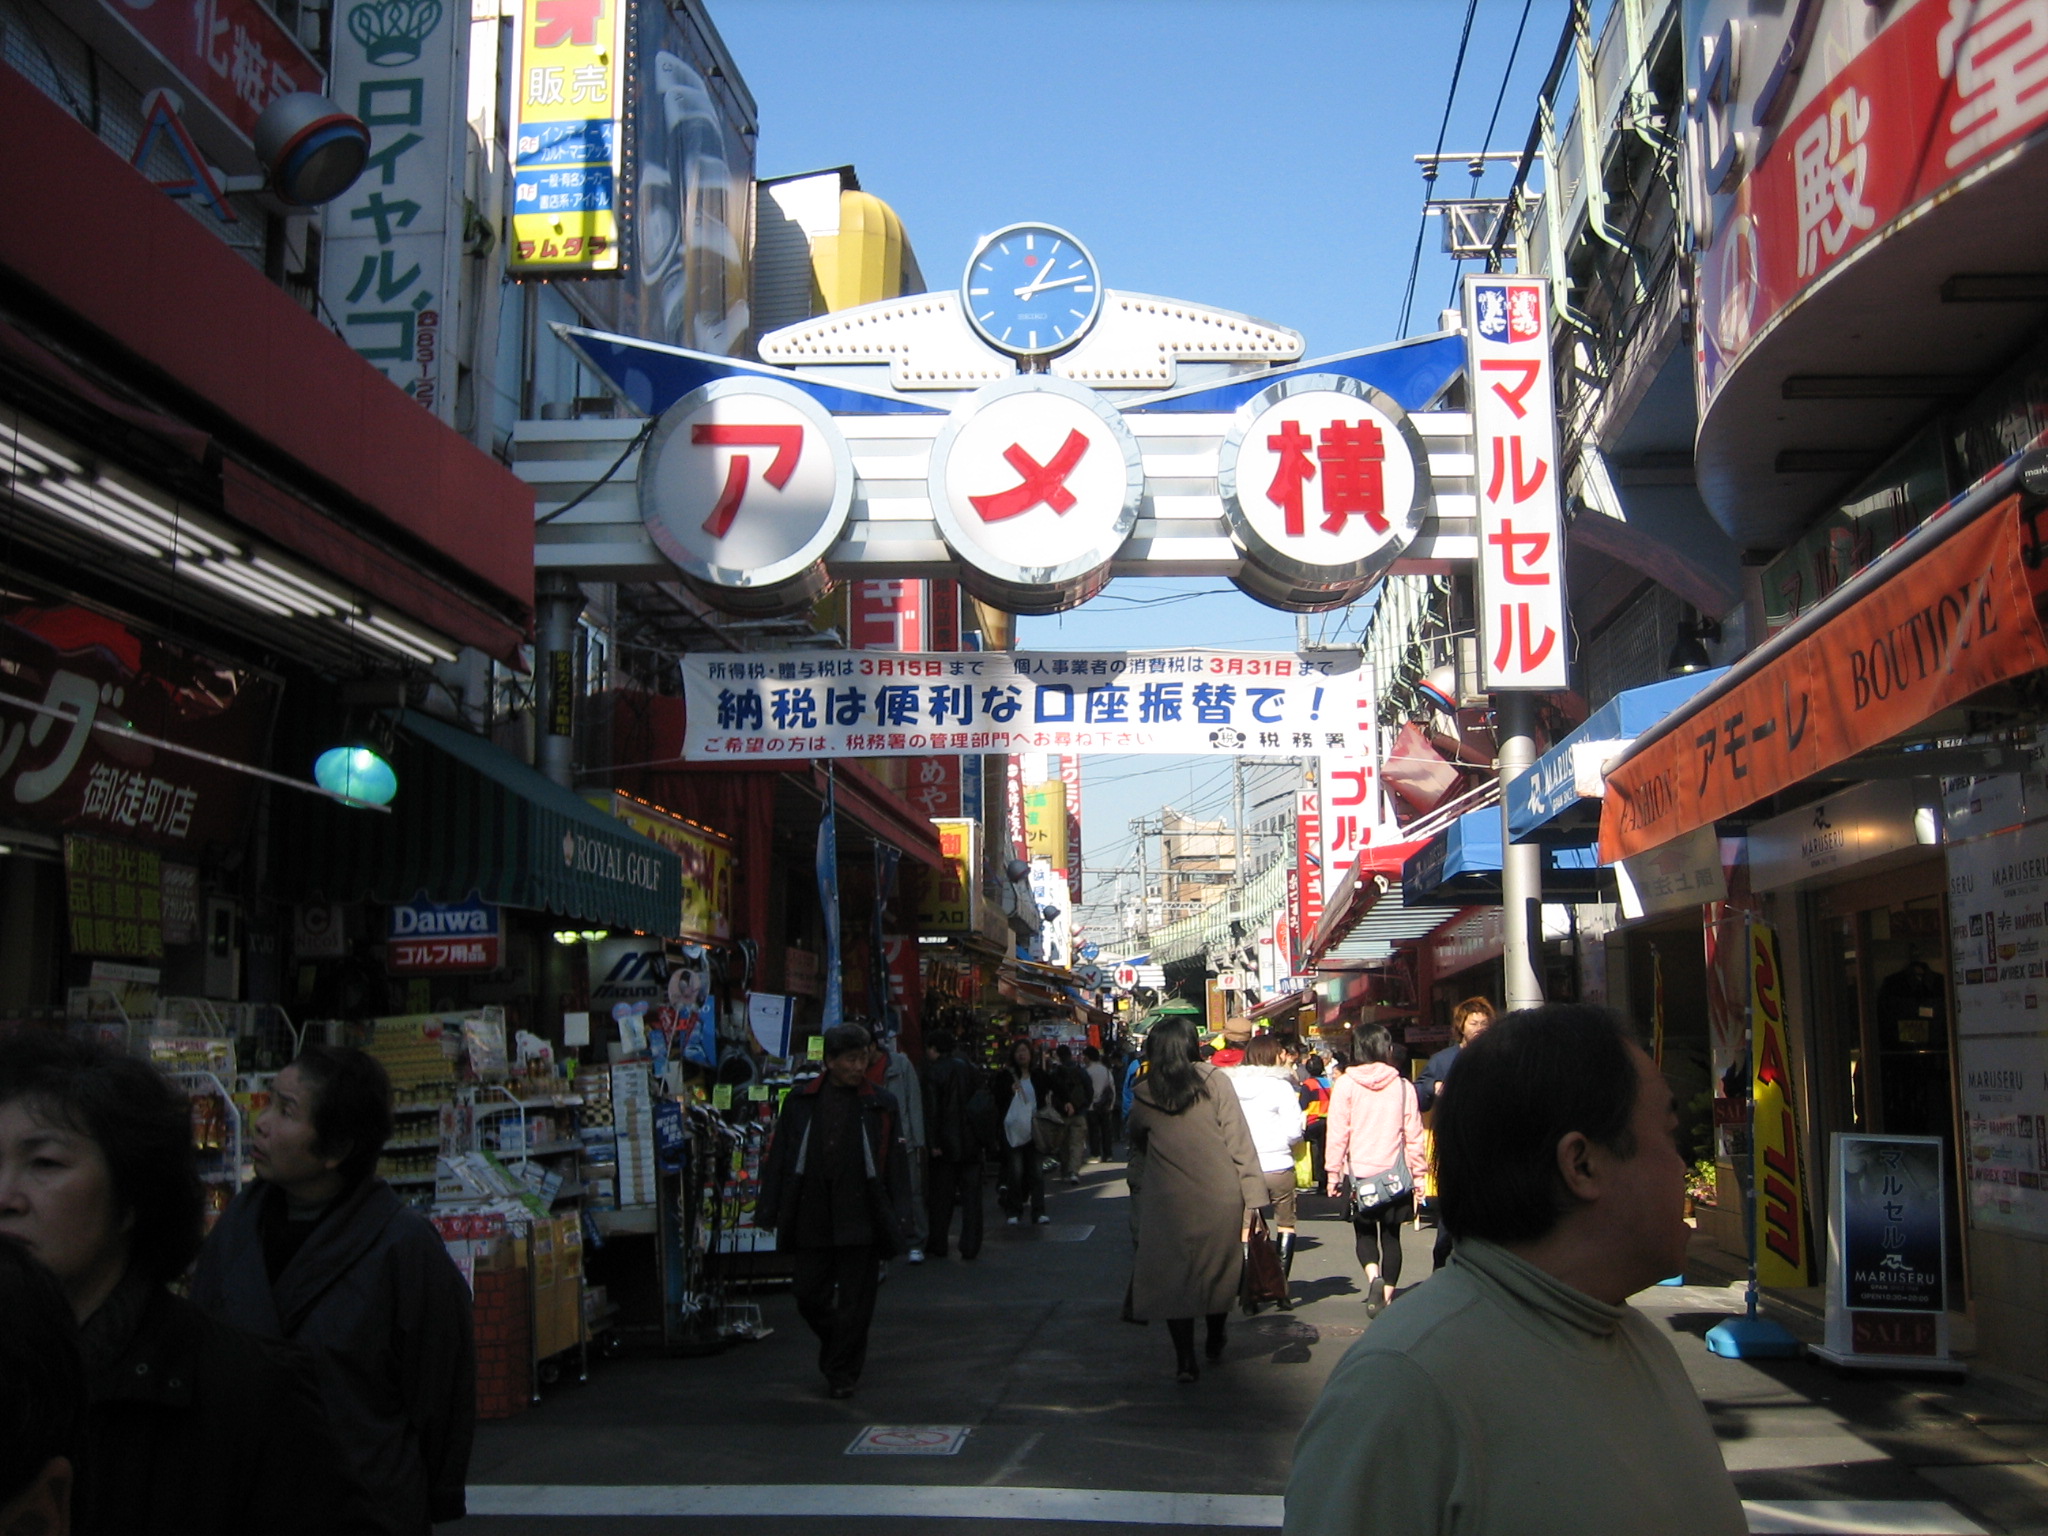 http://upload.wikimedia.org/wikipedia/commons/5/58/Ameyoko_Ueno_Tokyo_Japan.jpg